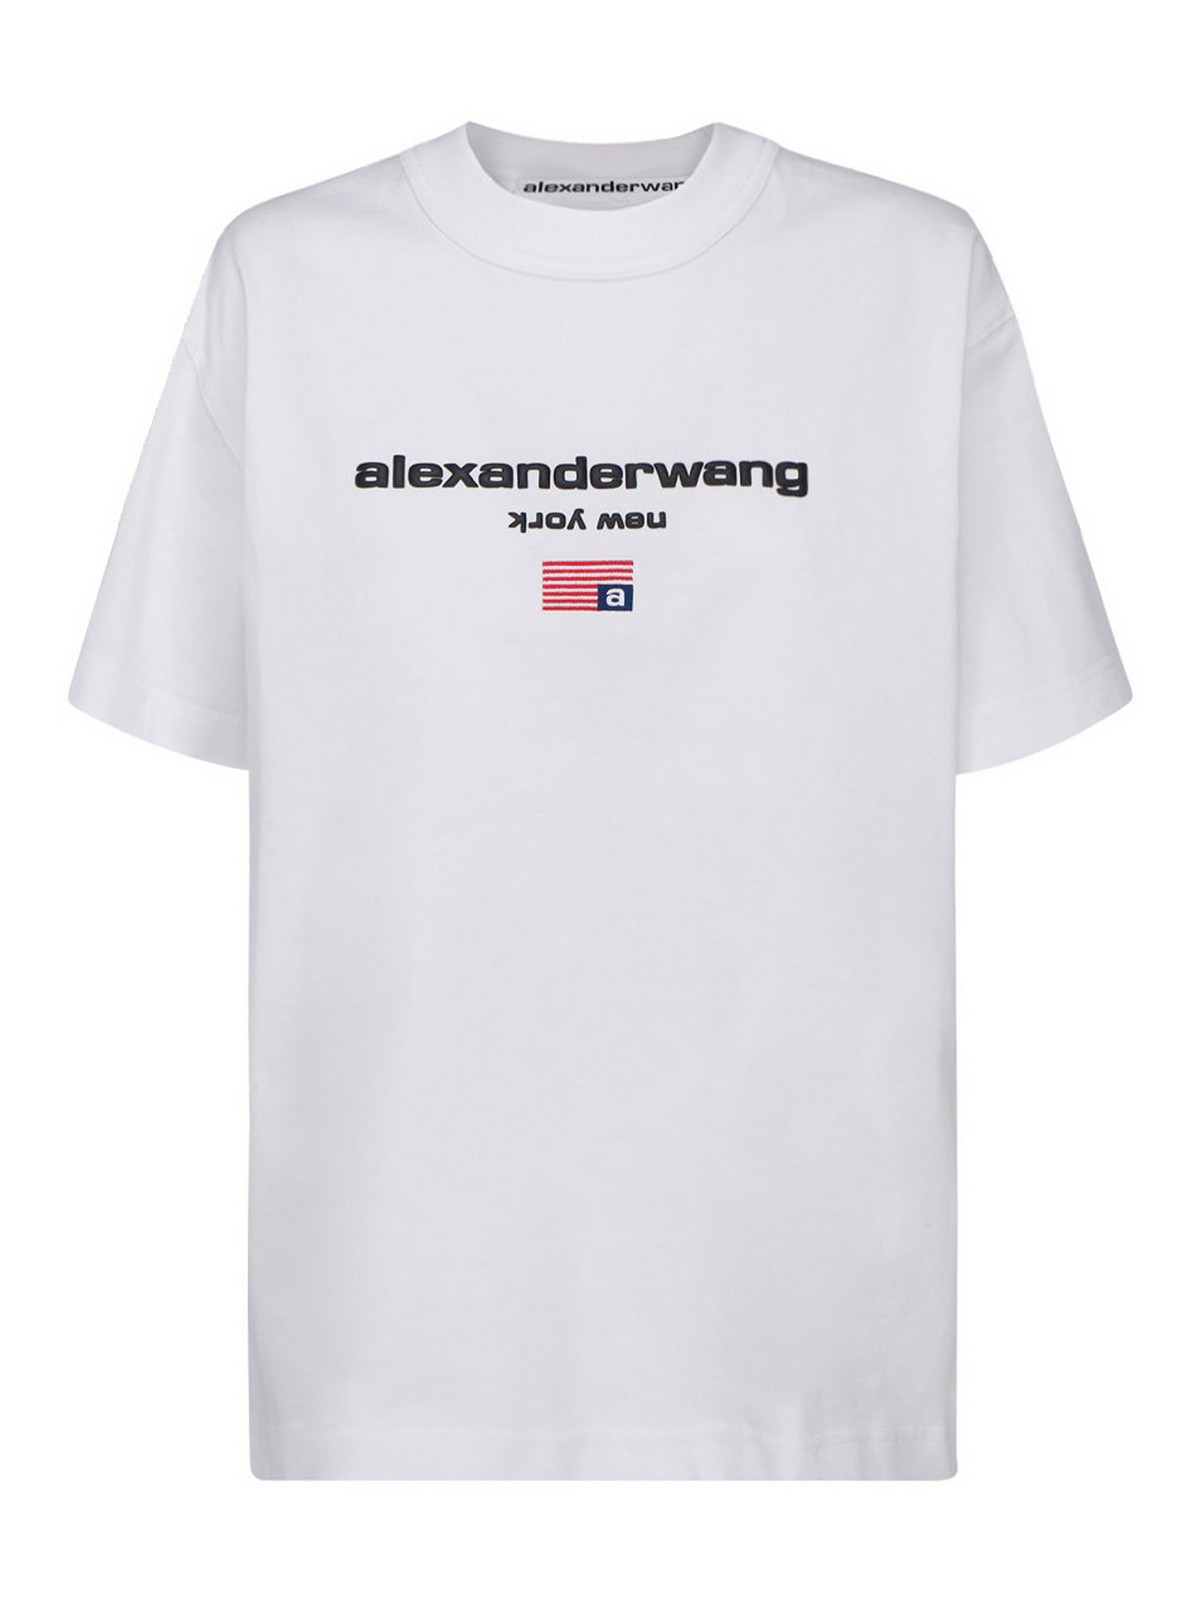 贈答 Alexanderwang Tシャツ アレキサンダーワン 3broadwaybistro.com